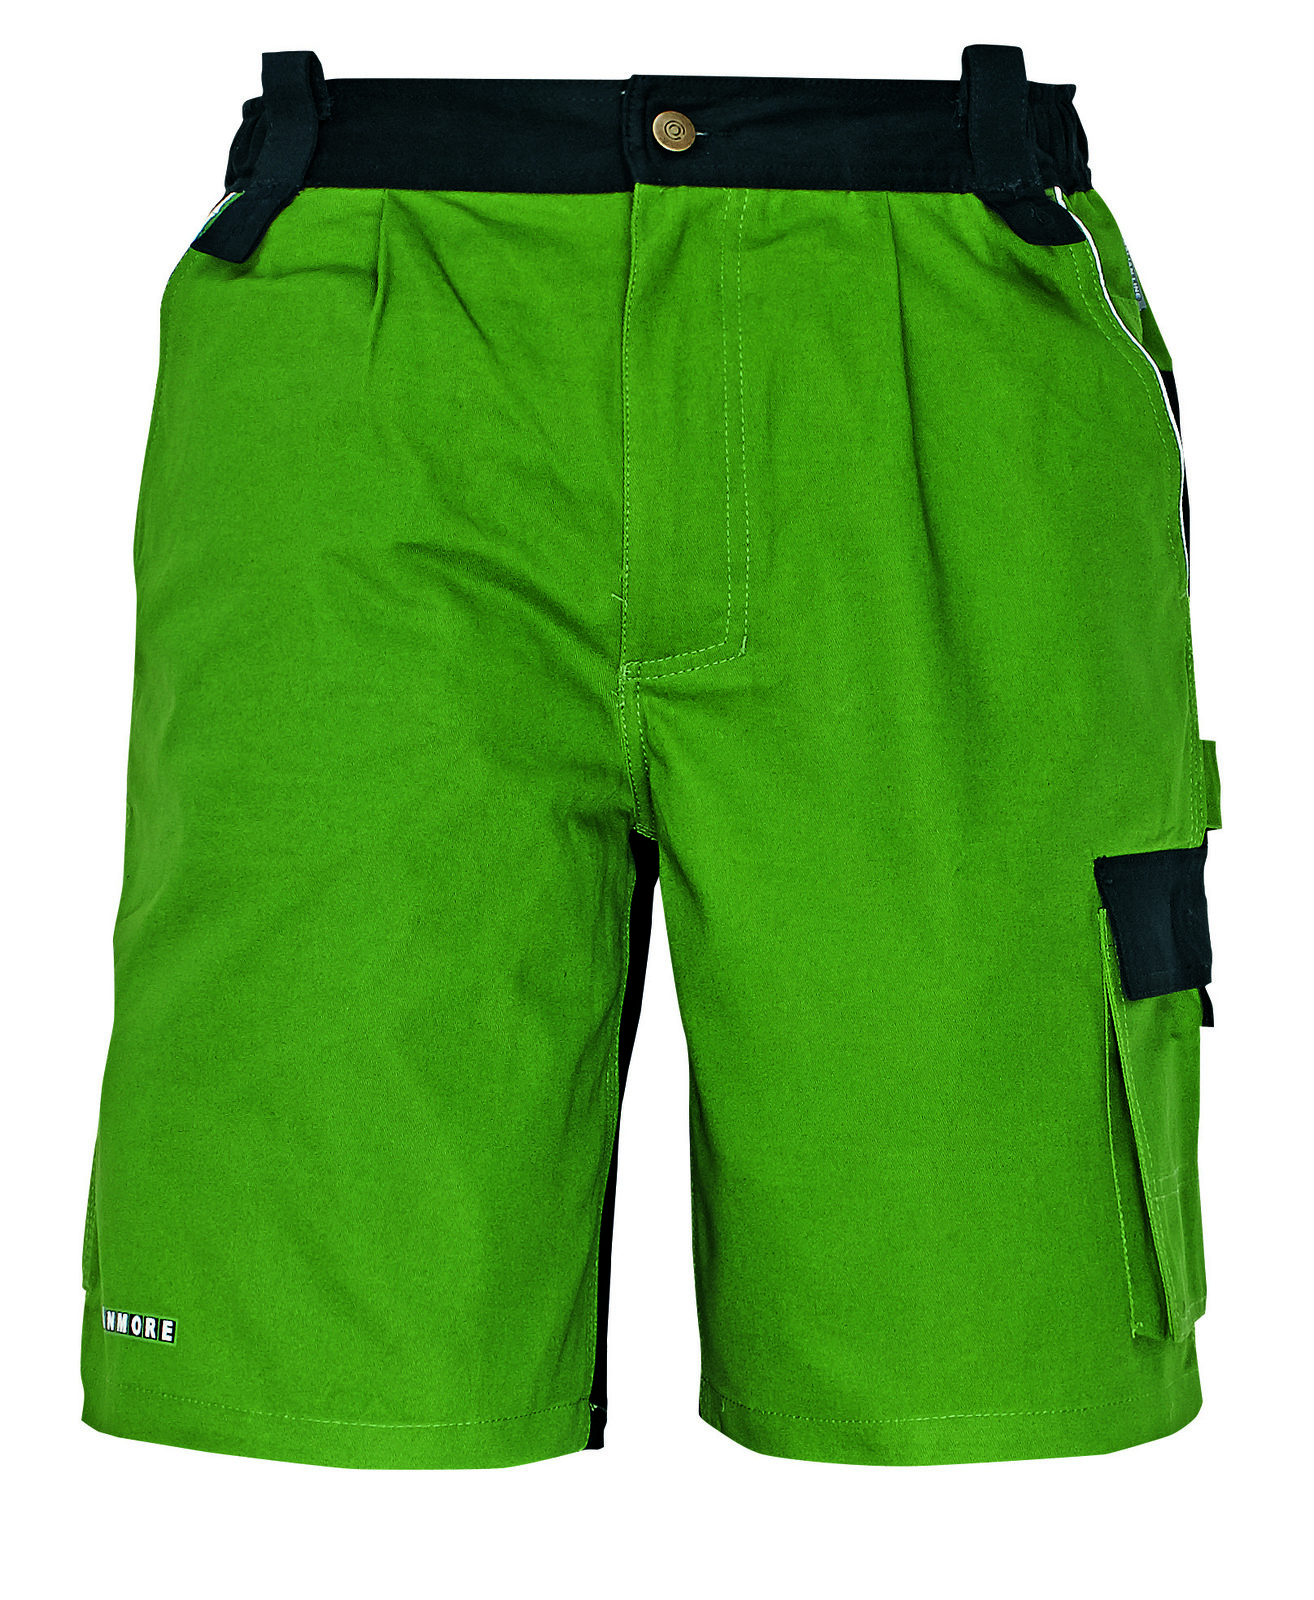 Bavlnené montérkové šortky Stanmore - veľkosť: 60, farba: zelená